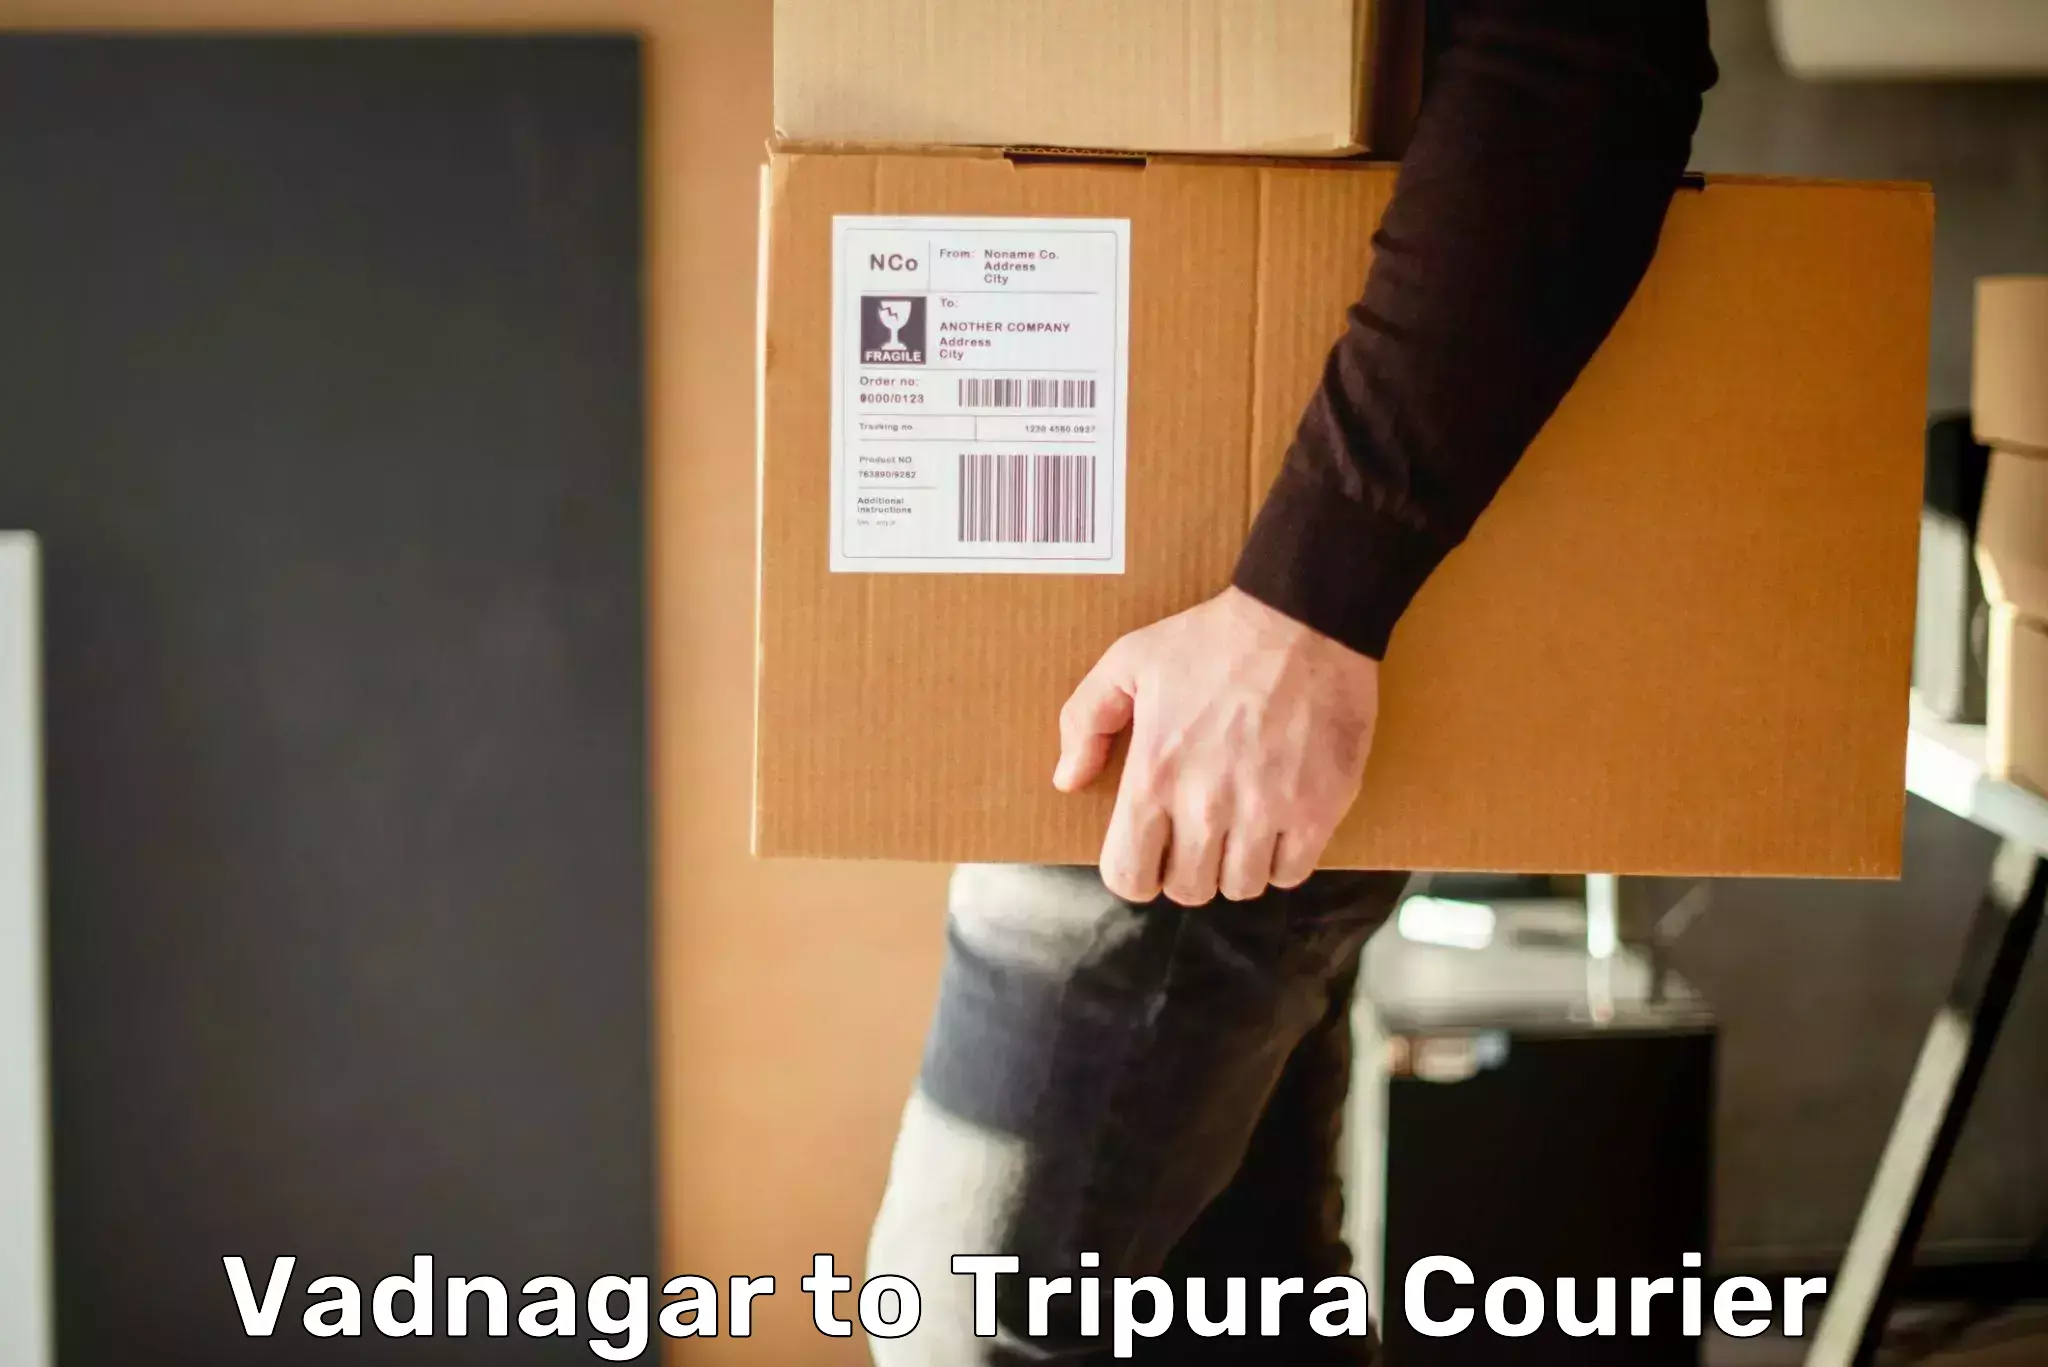 Express logistics providers in Vadnagar to Dharmanagar